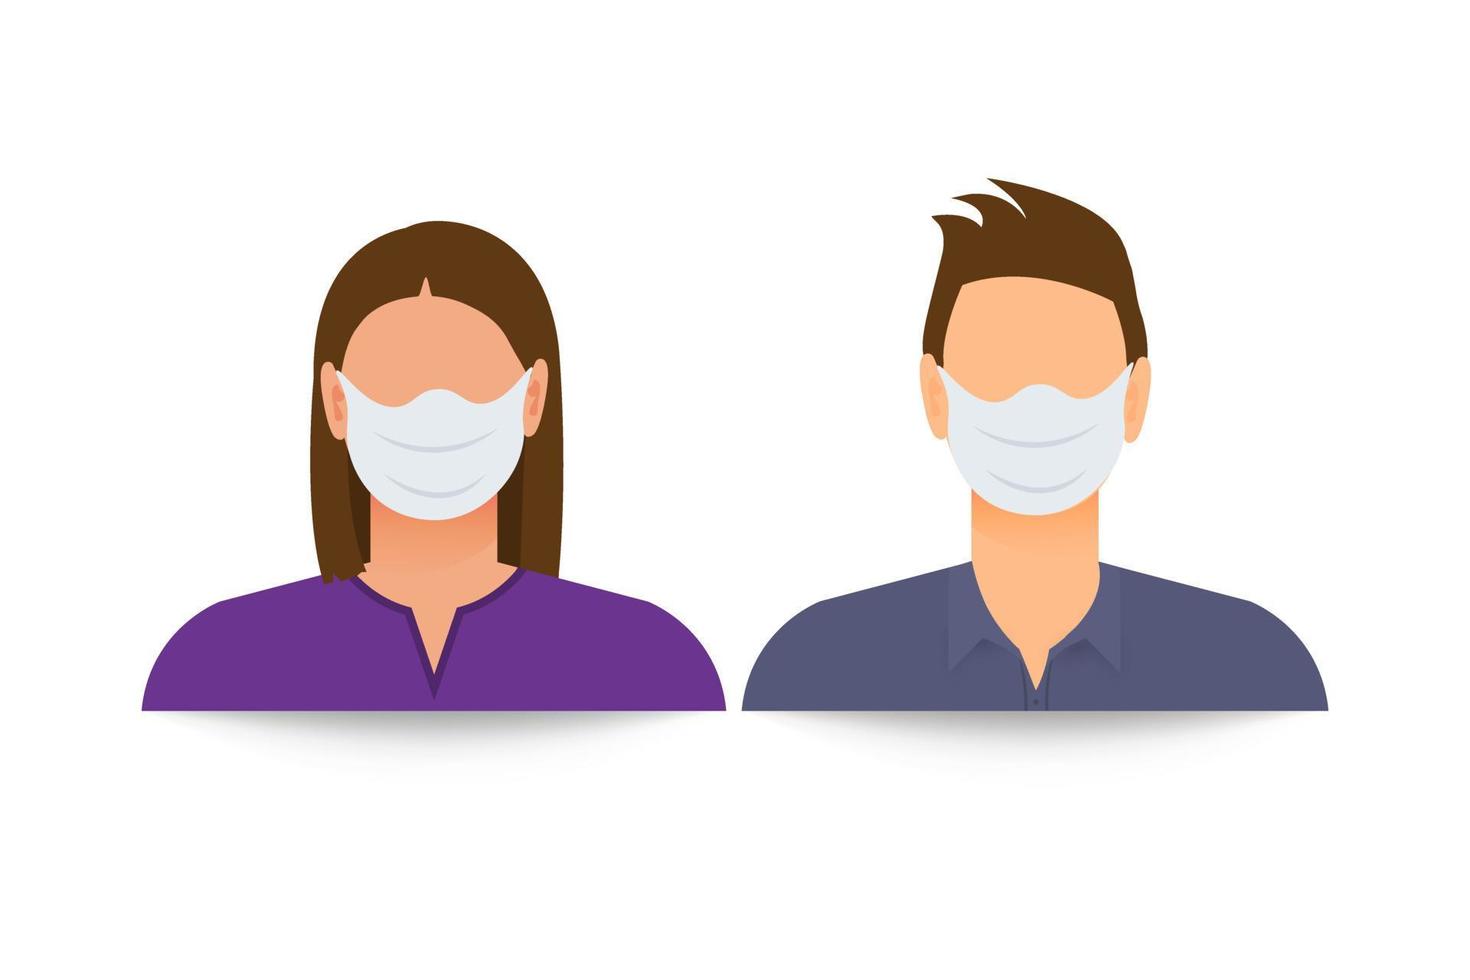 silueta femenina y masculina enmascarada. por favor, pon el ícono de tu máscara facial. un cartel que pide a las personas que usen una máscara facial. coronavirus. ilustración vectorial aislada. vector